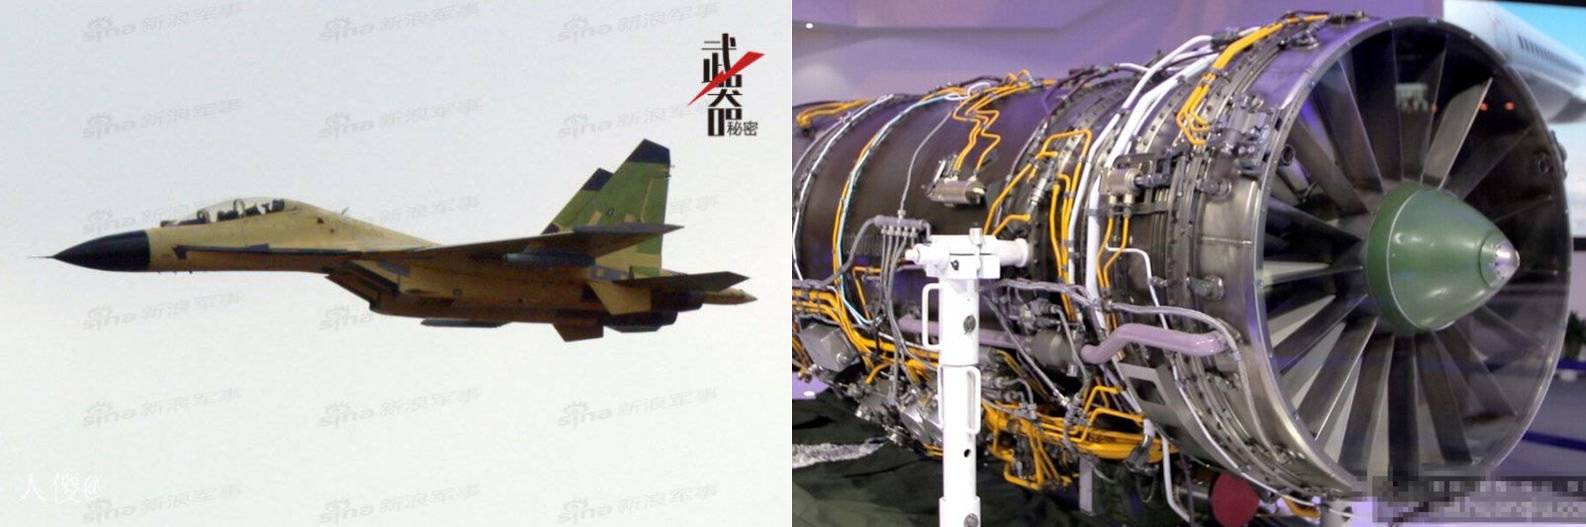 (좌) J-11 시제기와 (우) WS-10A Taihang 엔진 모습. 중국은 러시아로부터 면허 생산한 SU-27을 역설계하여 J-11 전투기를 제작했다. <출처 : Global Security>